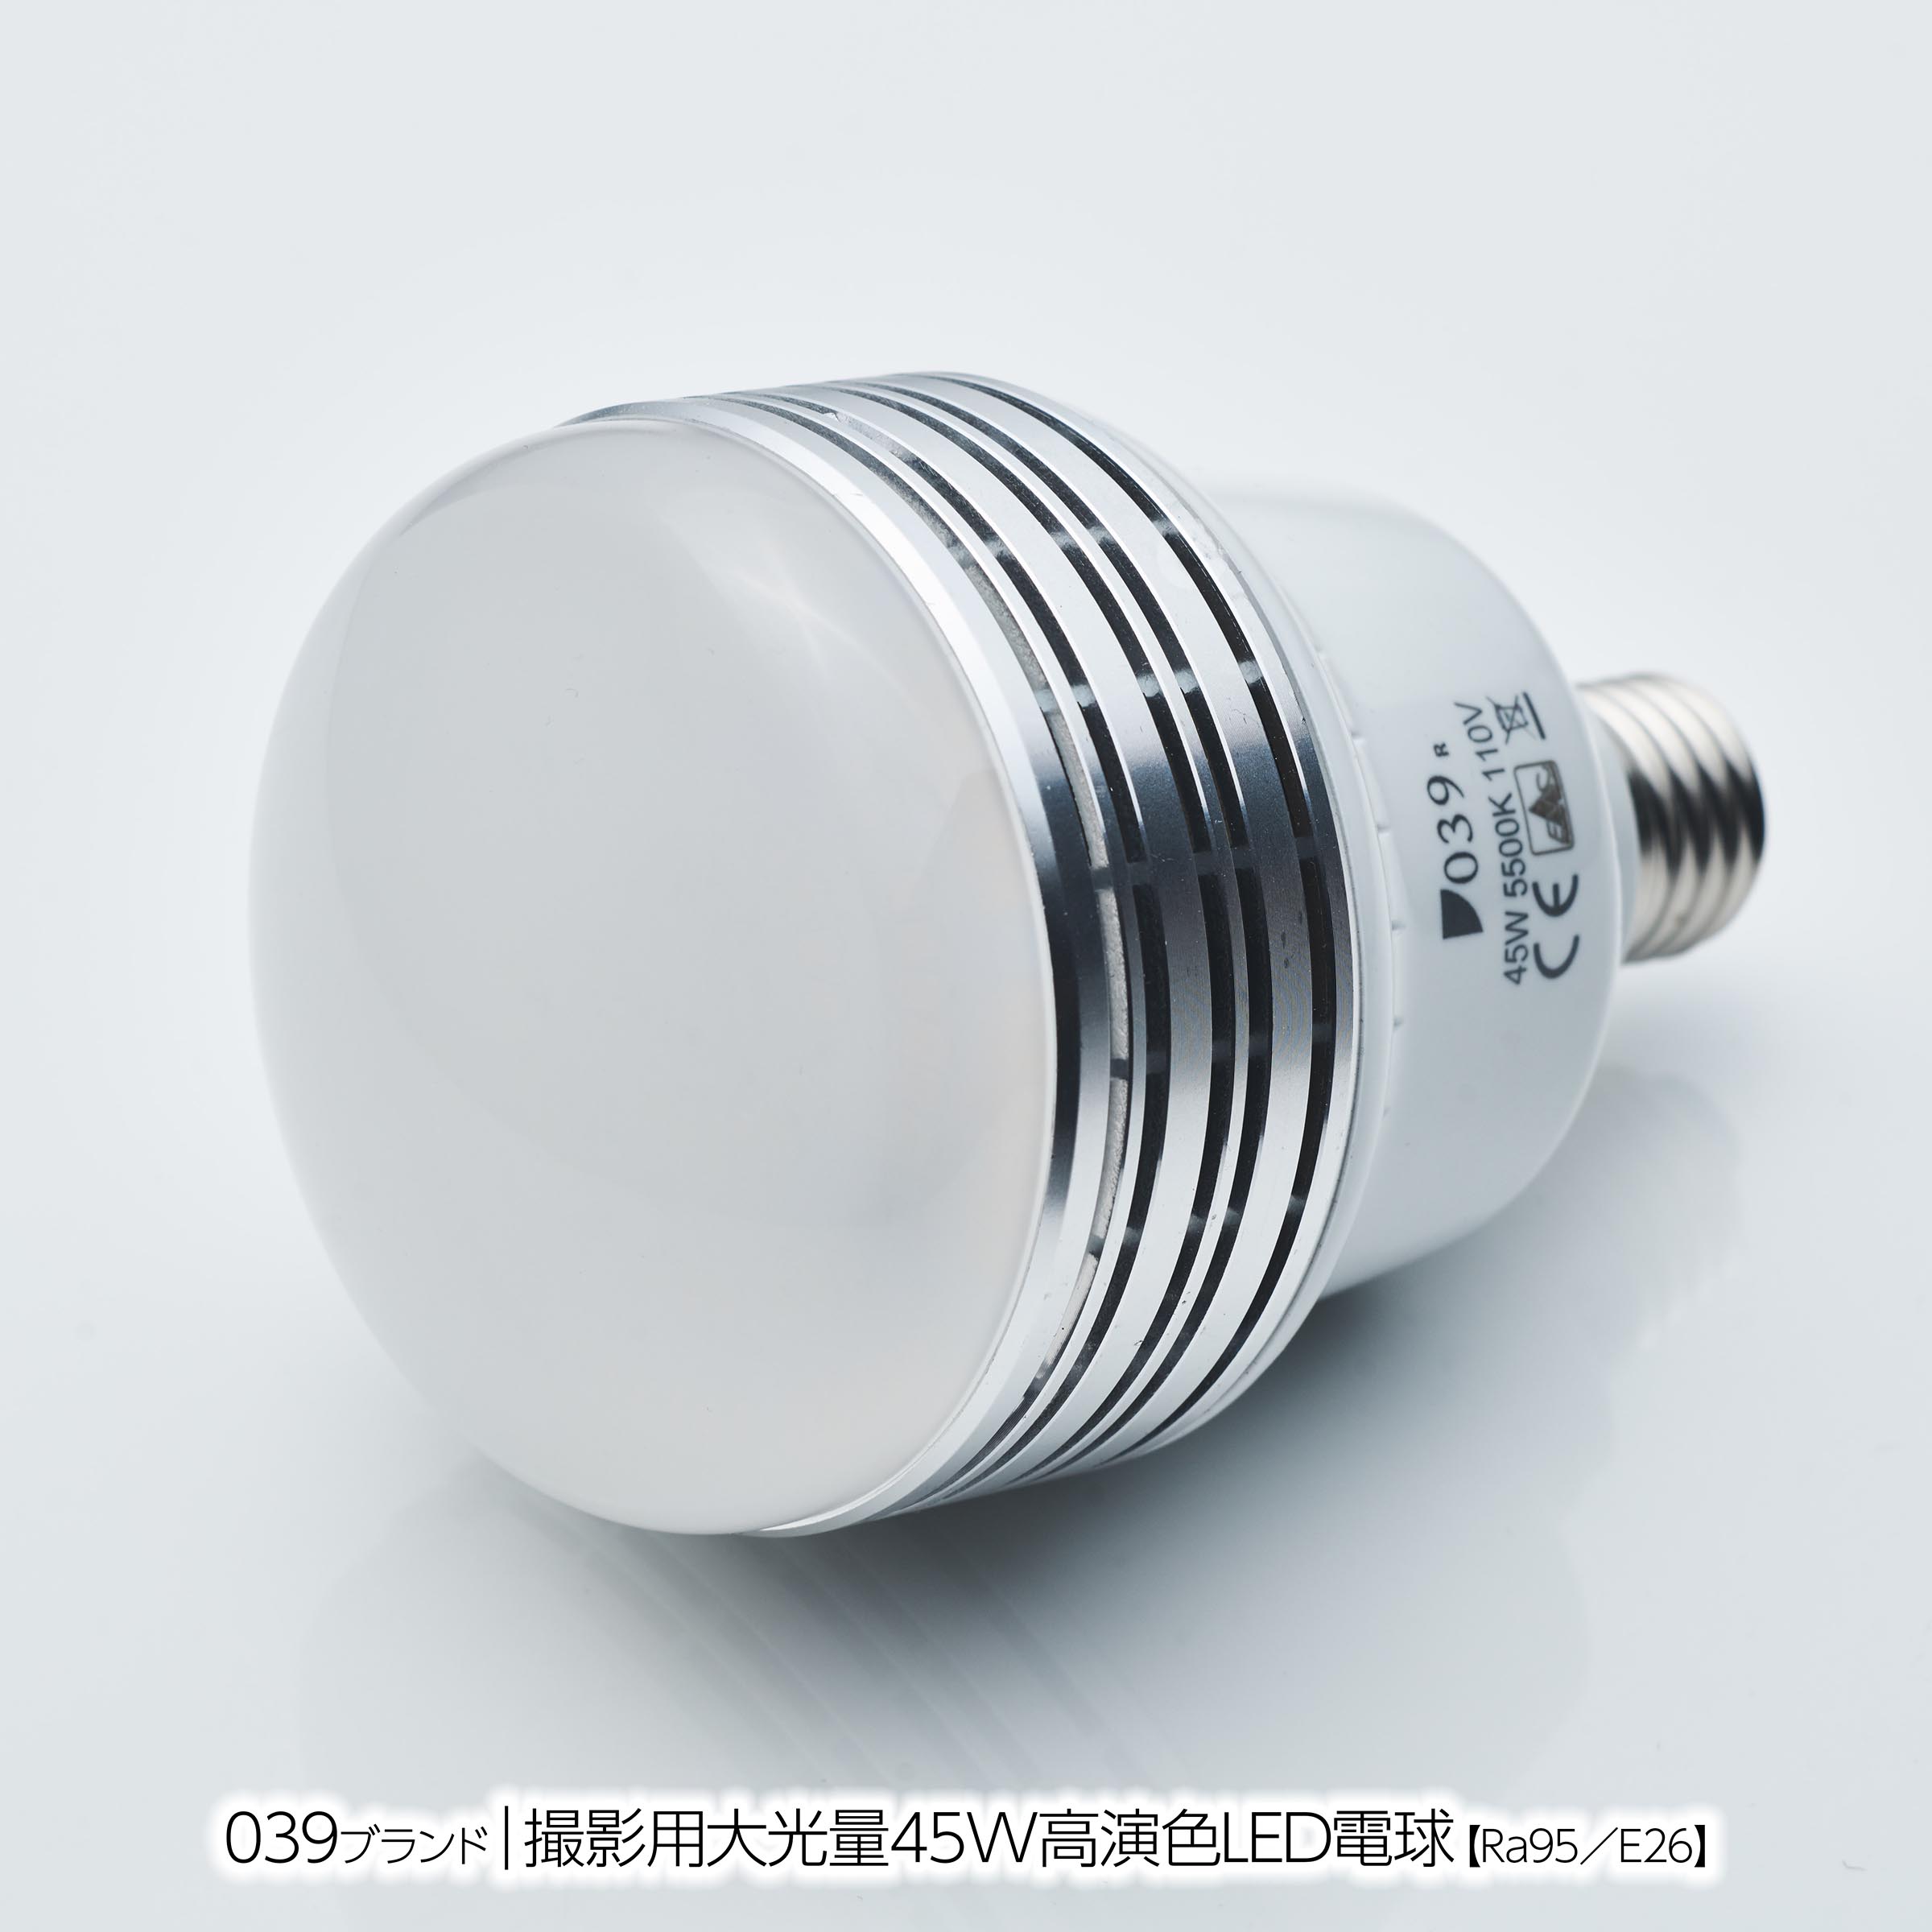 600Wフォトランプ（アイランプ）と「45W高演色LED電球」の比較 